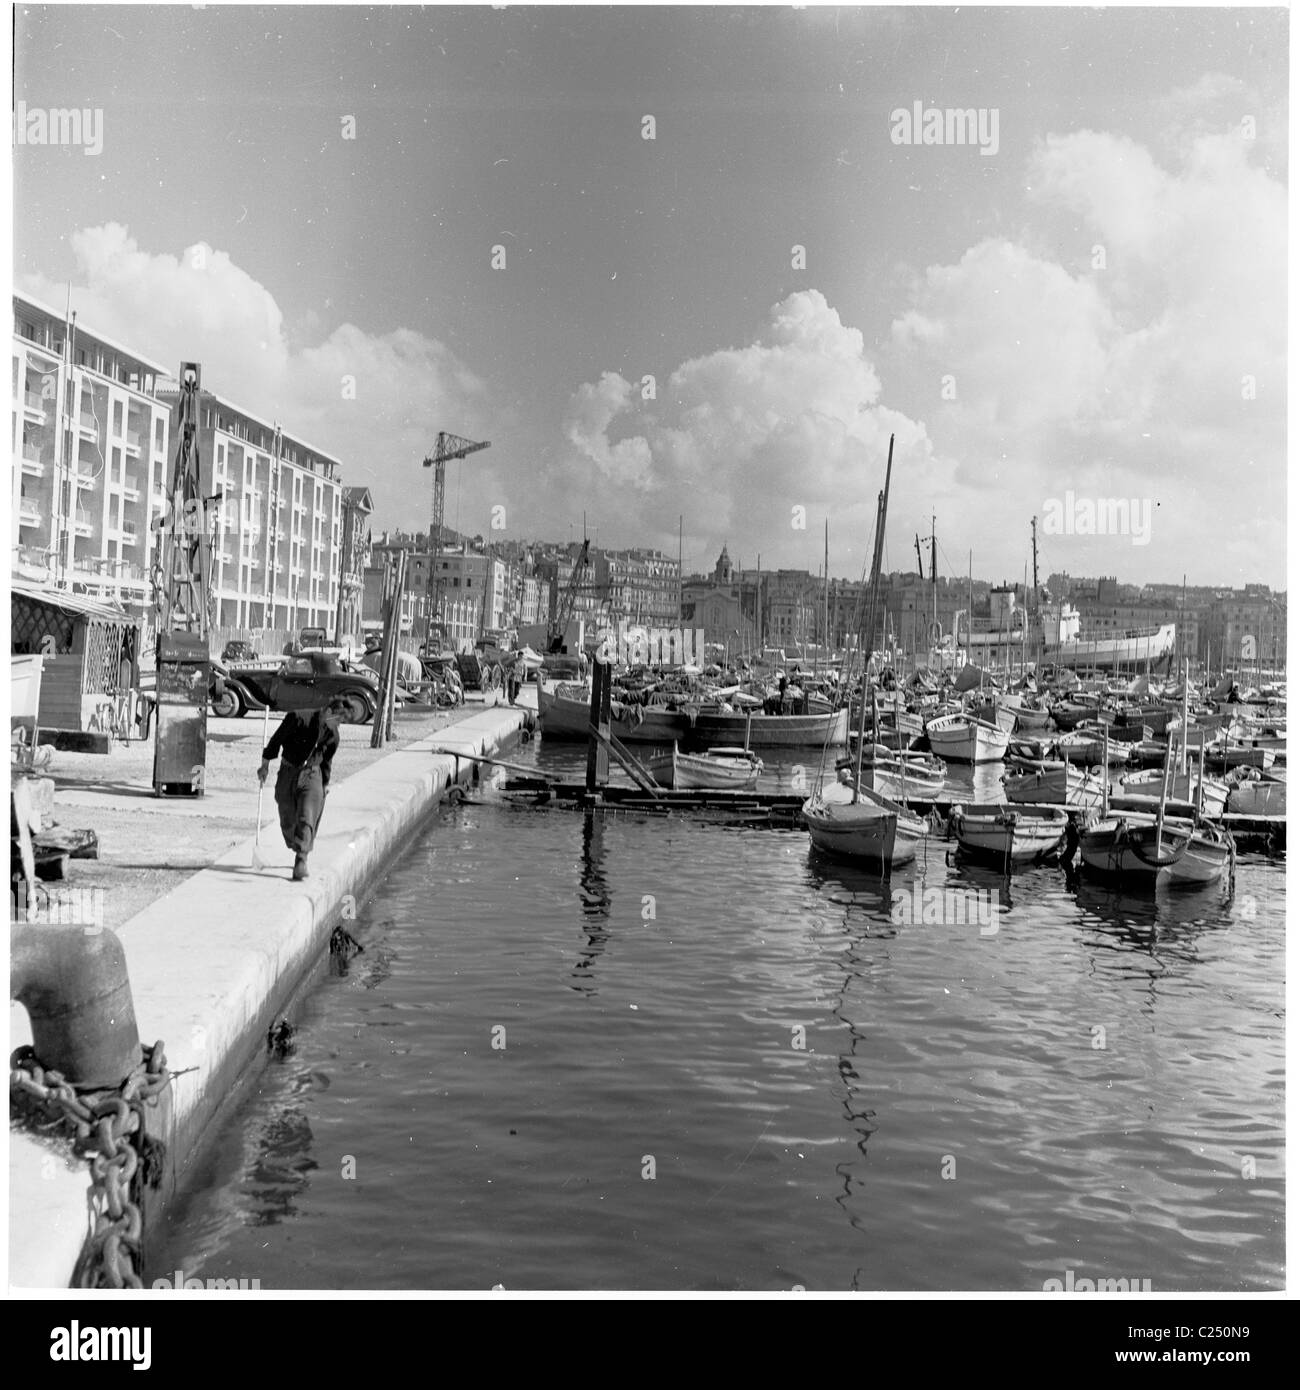 1950s, historische Ansicht des alten Hafens von Marseille, Frankreich, einer antiken Siedlung und der ältesten Stadt Frankreichs, gegründet um 600 v. Chr. von den Griechen Stockfoto